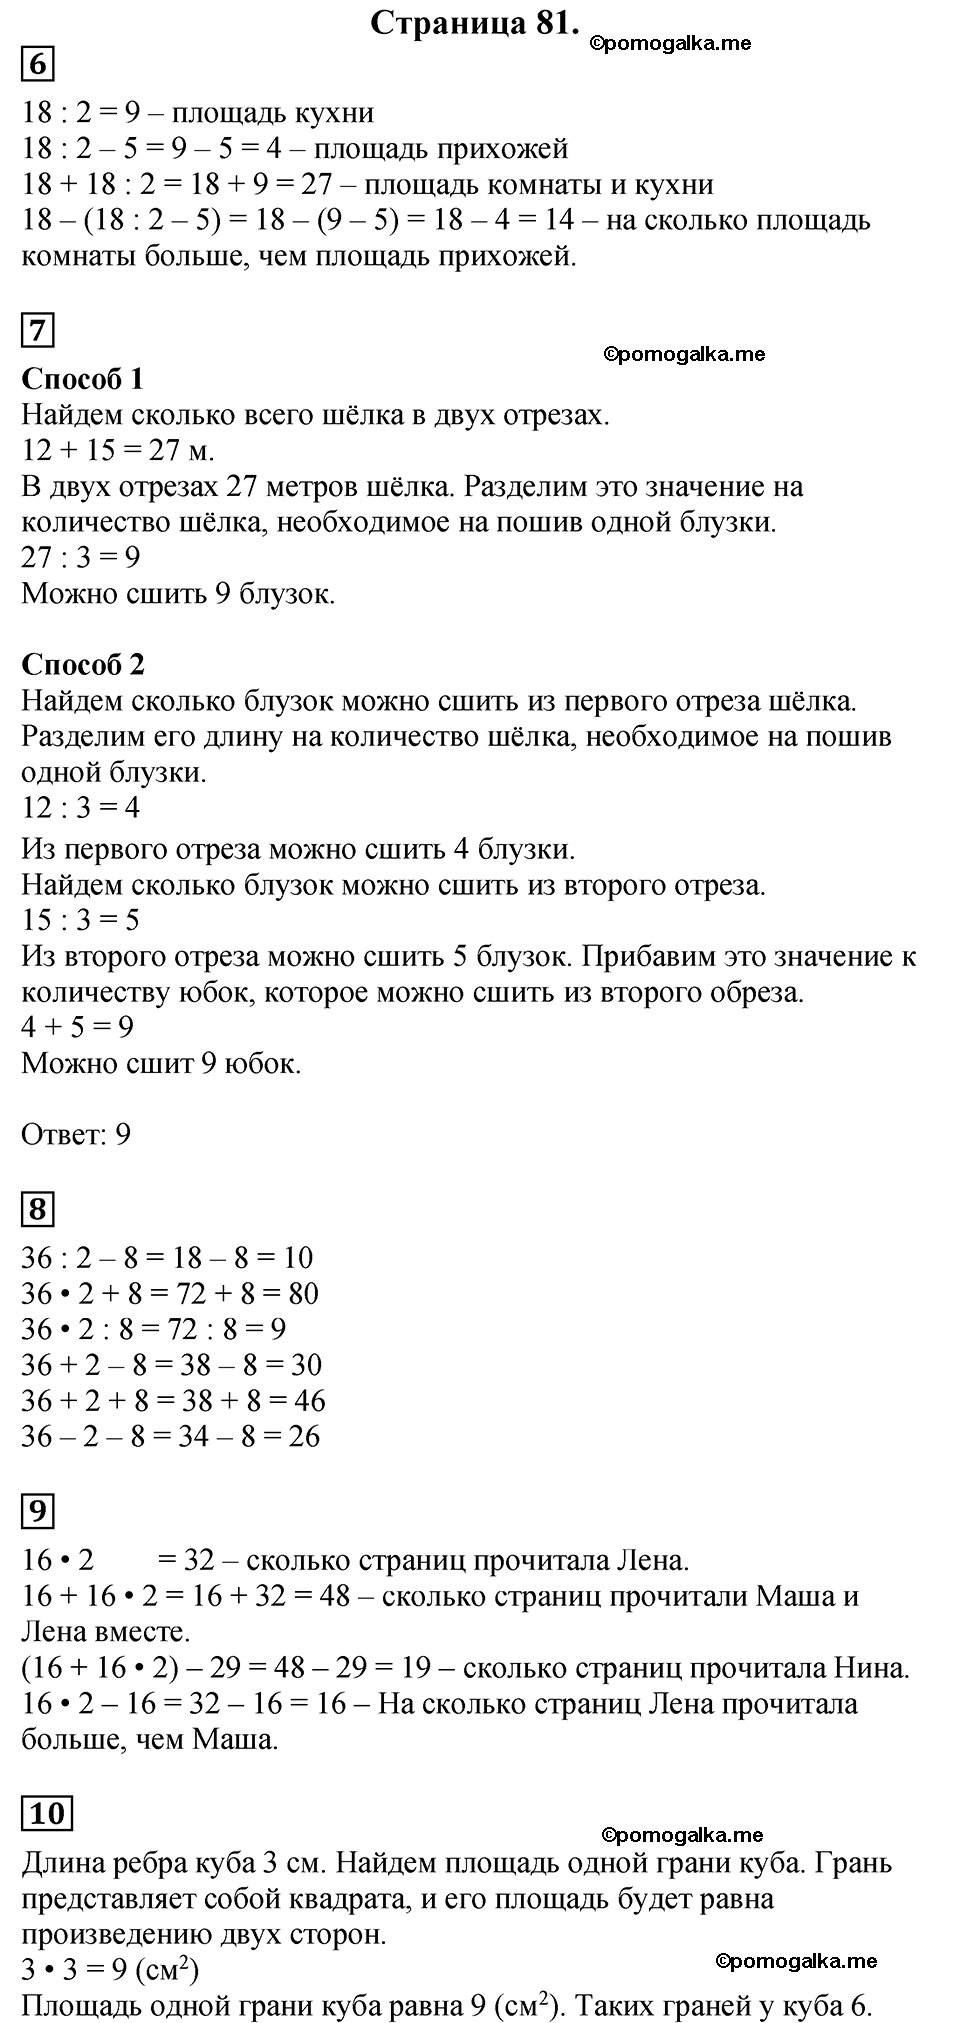 Страница №81 Часть 2 математика 3 класс Дорофеев